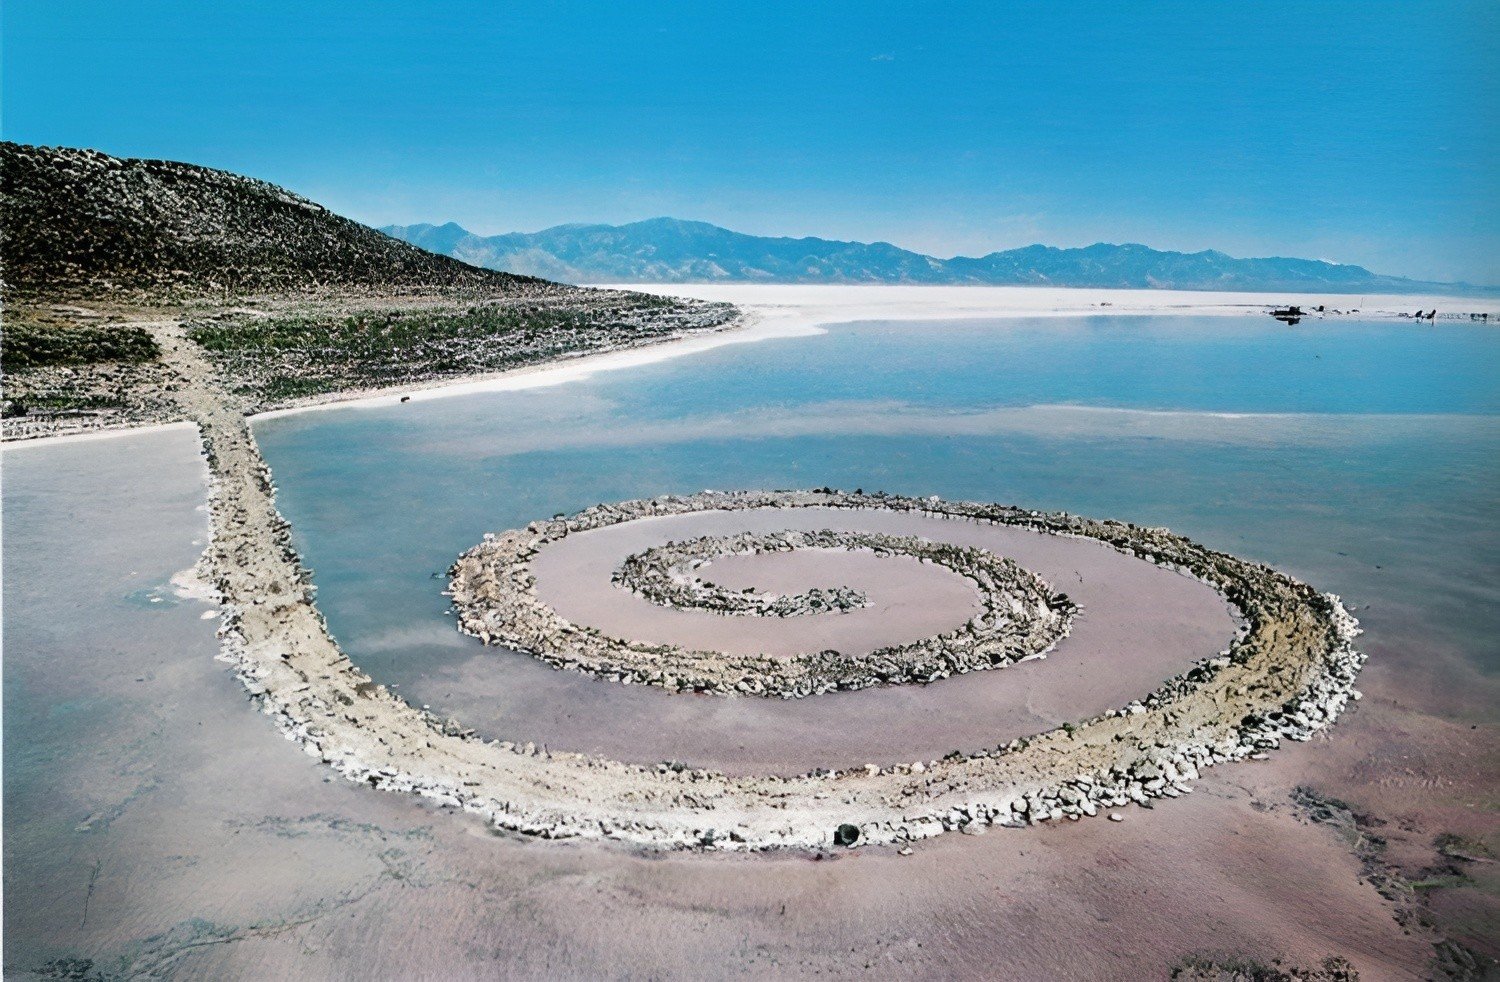 Spiral jetty Robert Smithson